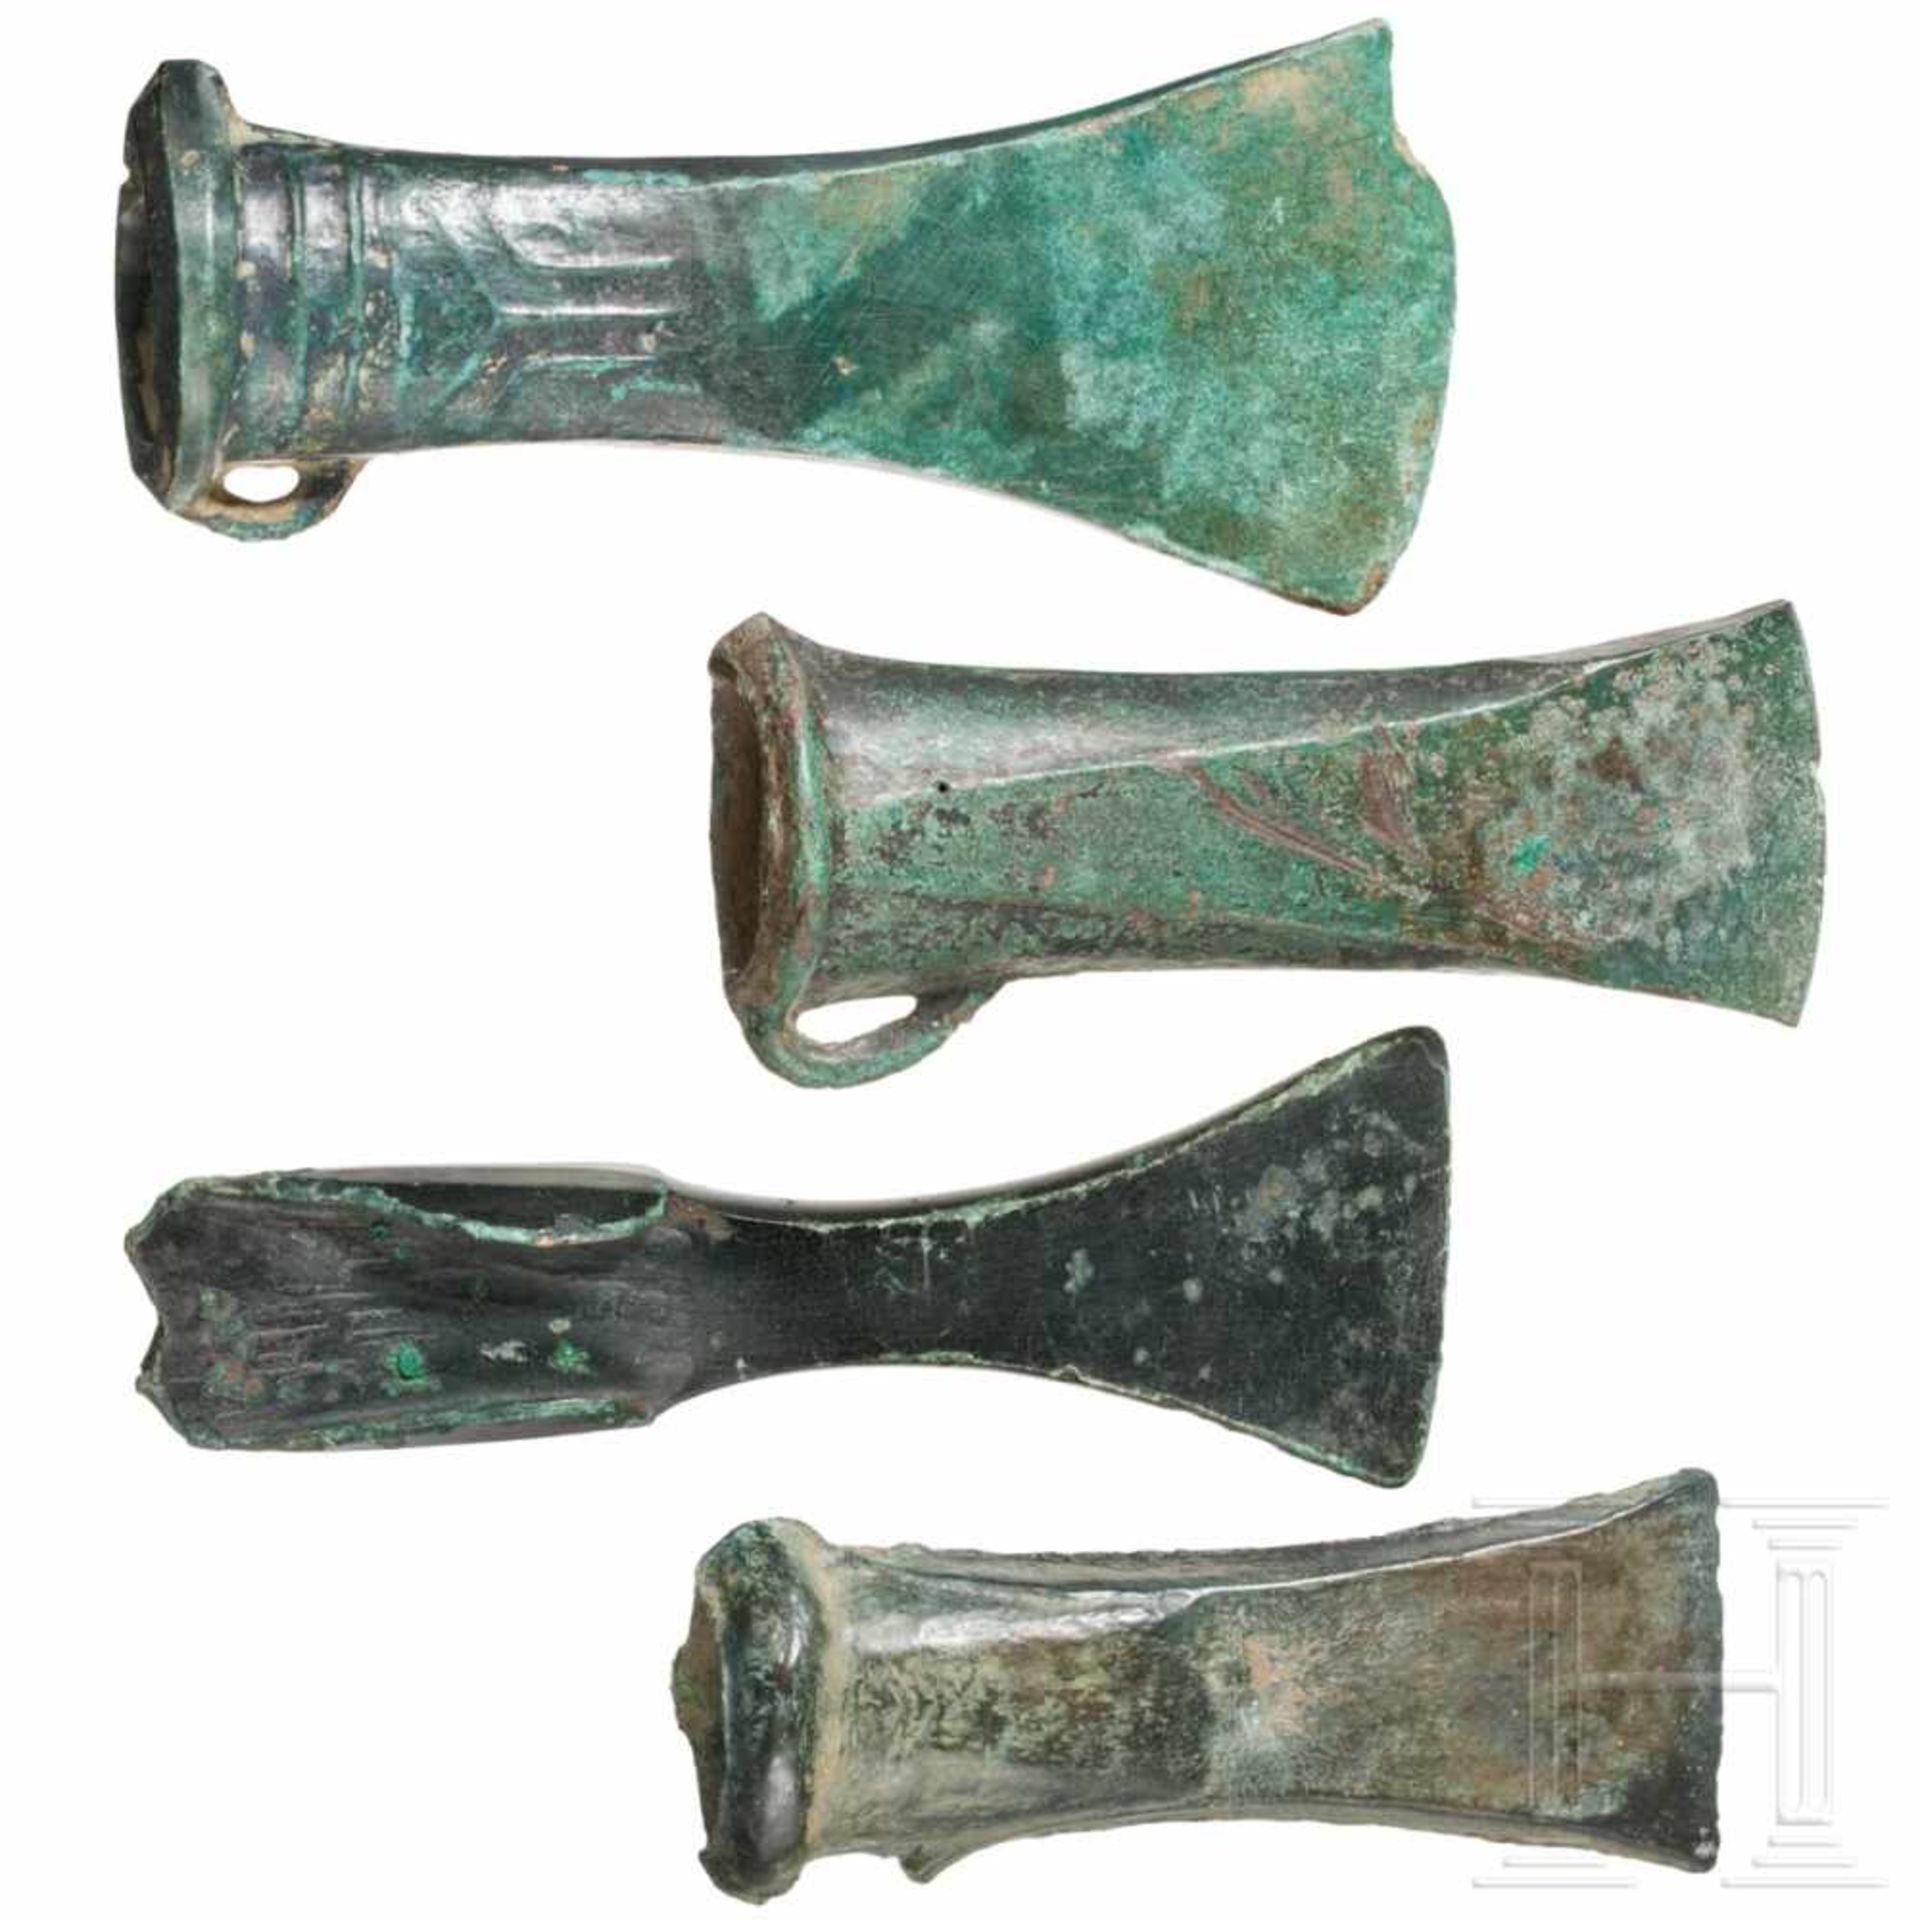 Drei Tüllenbeile und ein Lappenbeil, Mitteleuropa, 1. Hälfte 1. Jtsd. v. Chr.